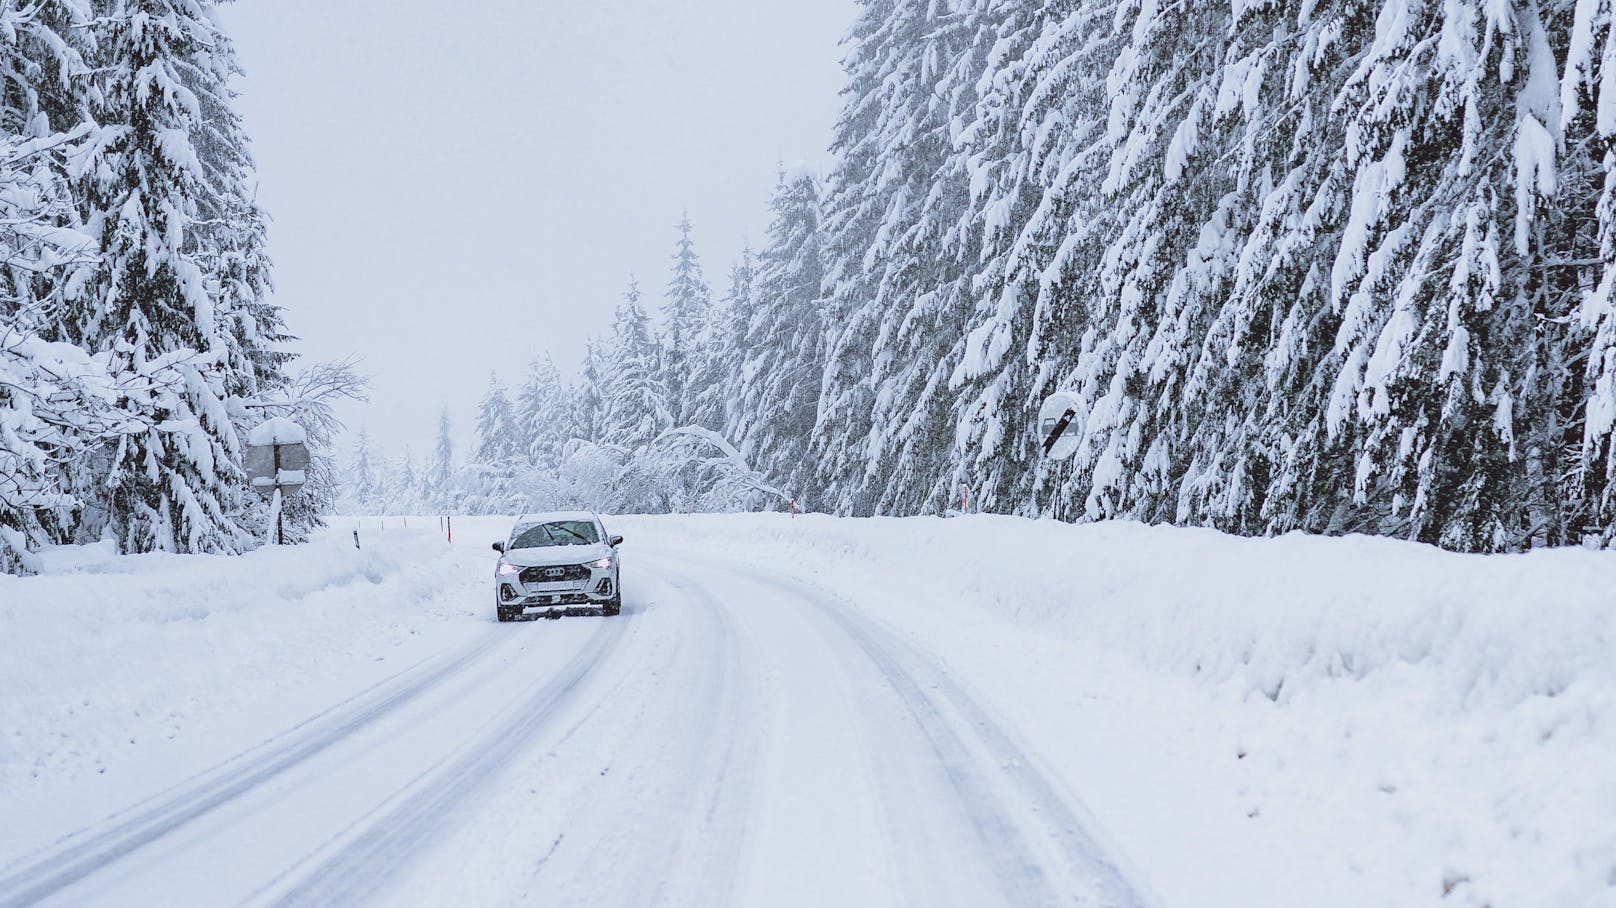 Kälteeinbruch in Österreich bringt Schnee zu Weihnachten. (Archivfoto)